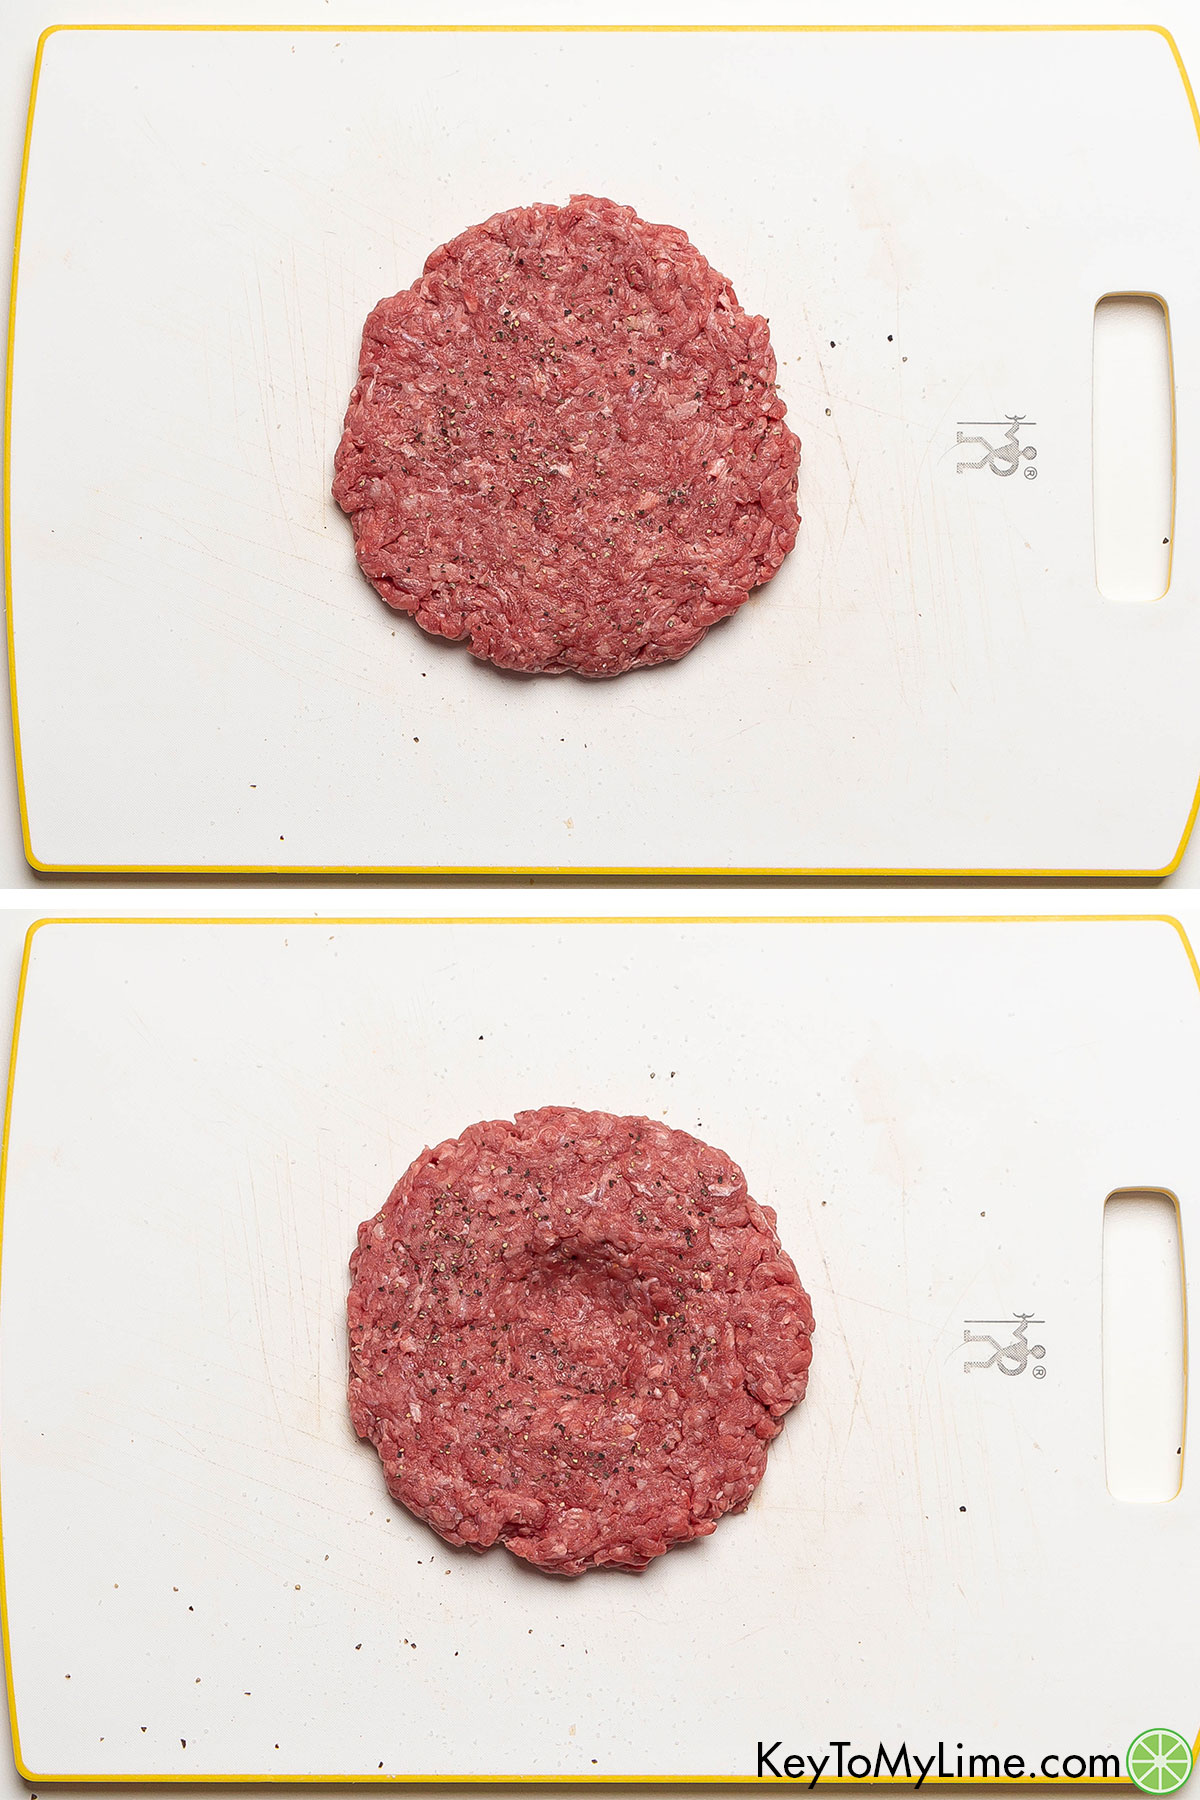 Shaping, seasoning, and indenting a raw hamburger patty.